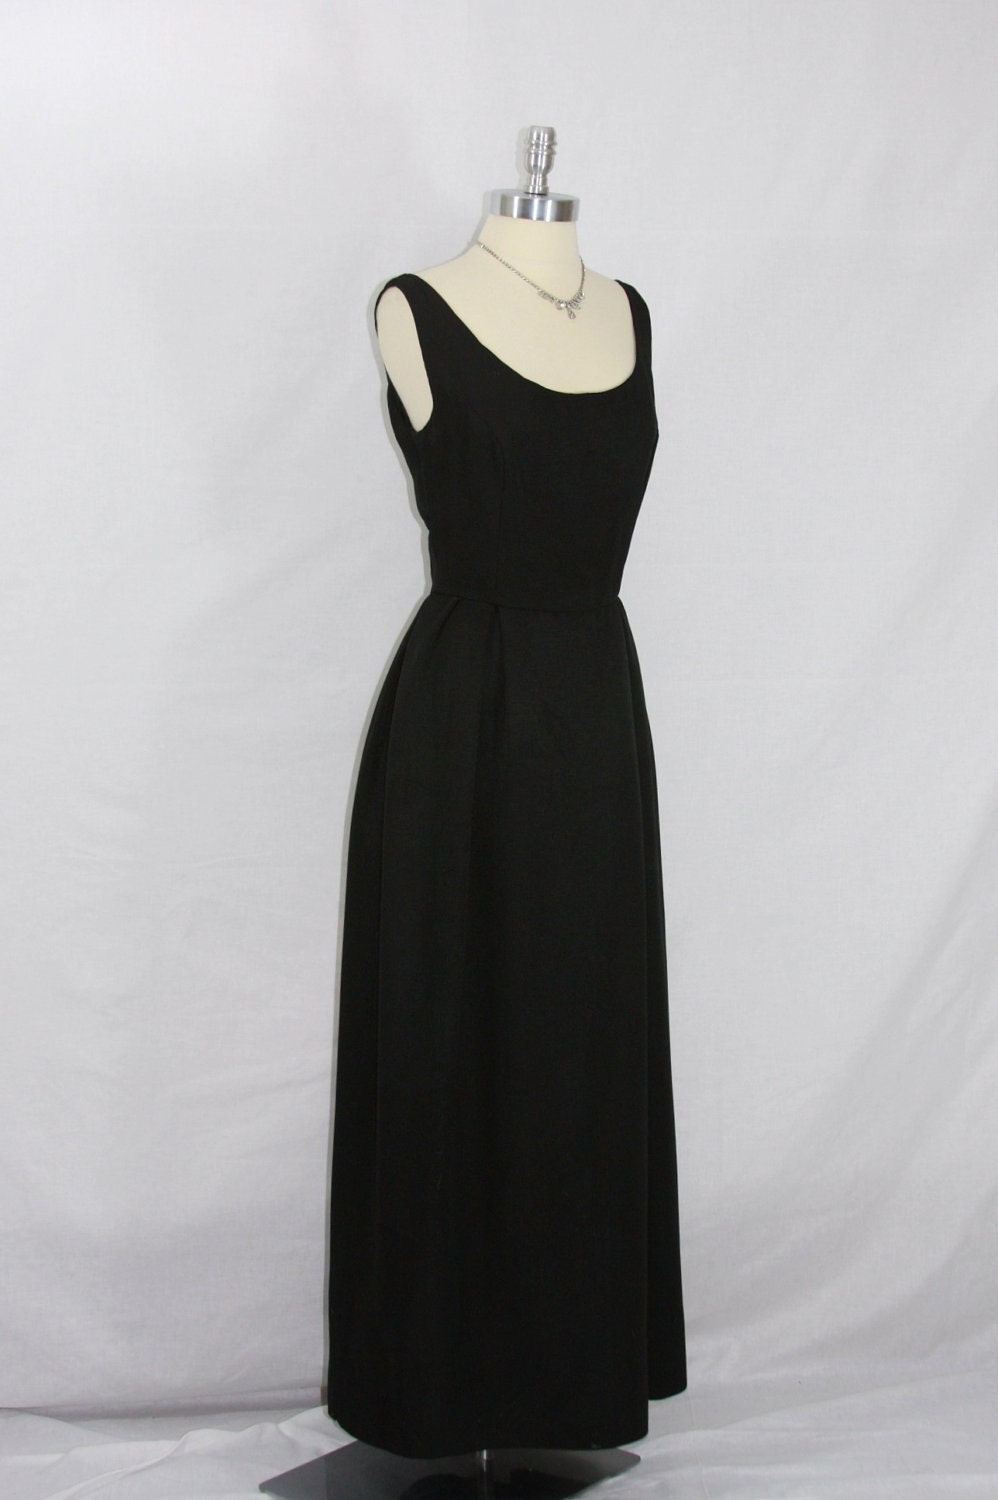 1960's Full Length Dress - Black Sleeveless Scoop Neck Formal Frock